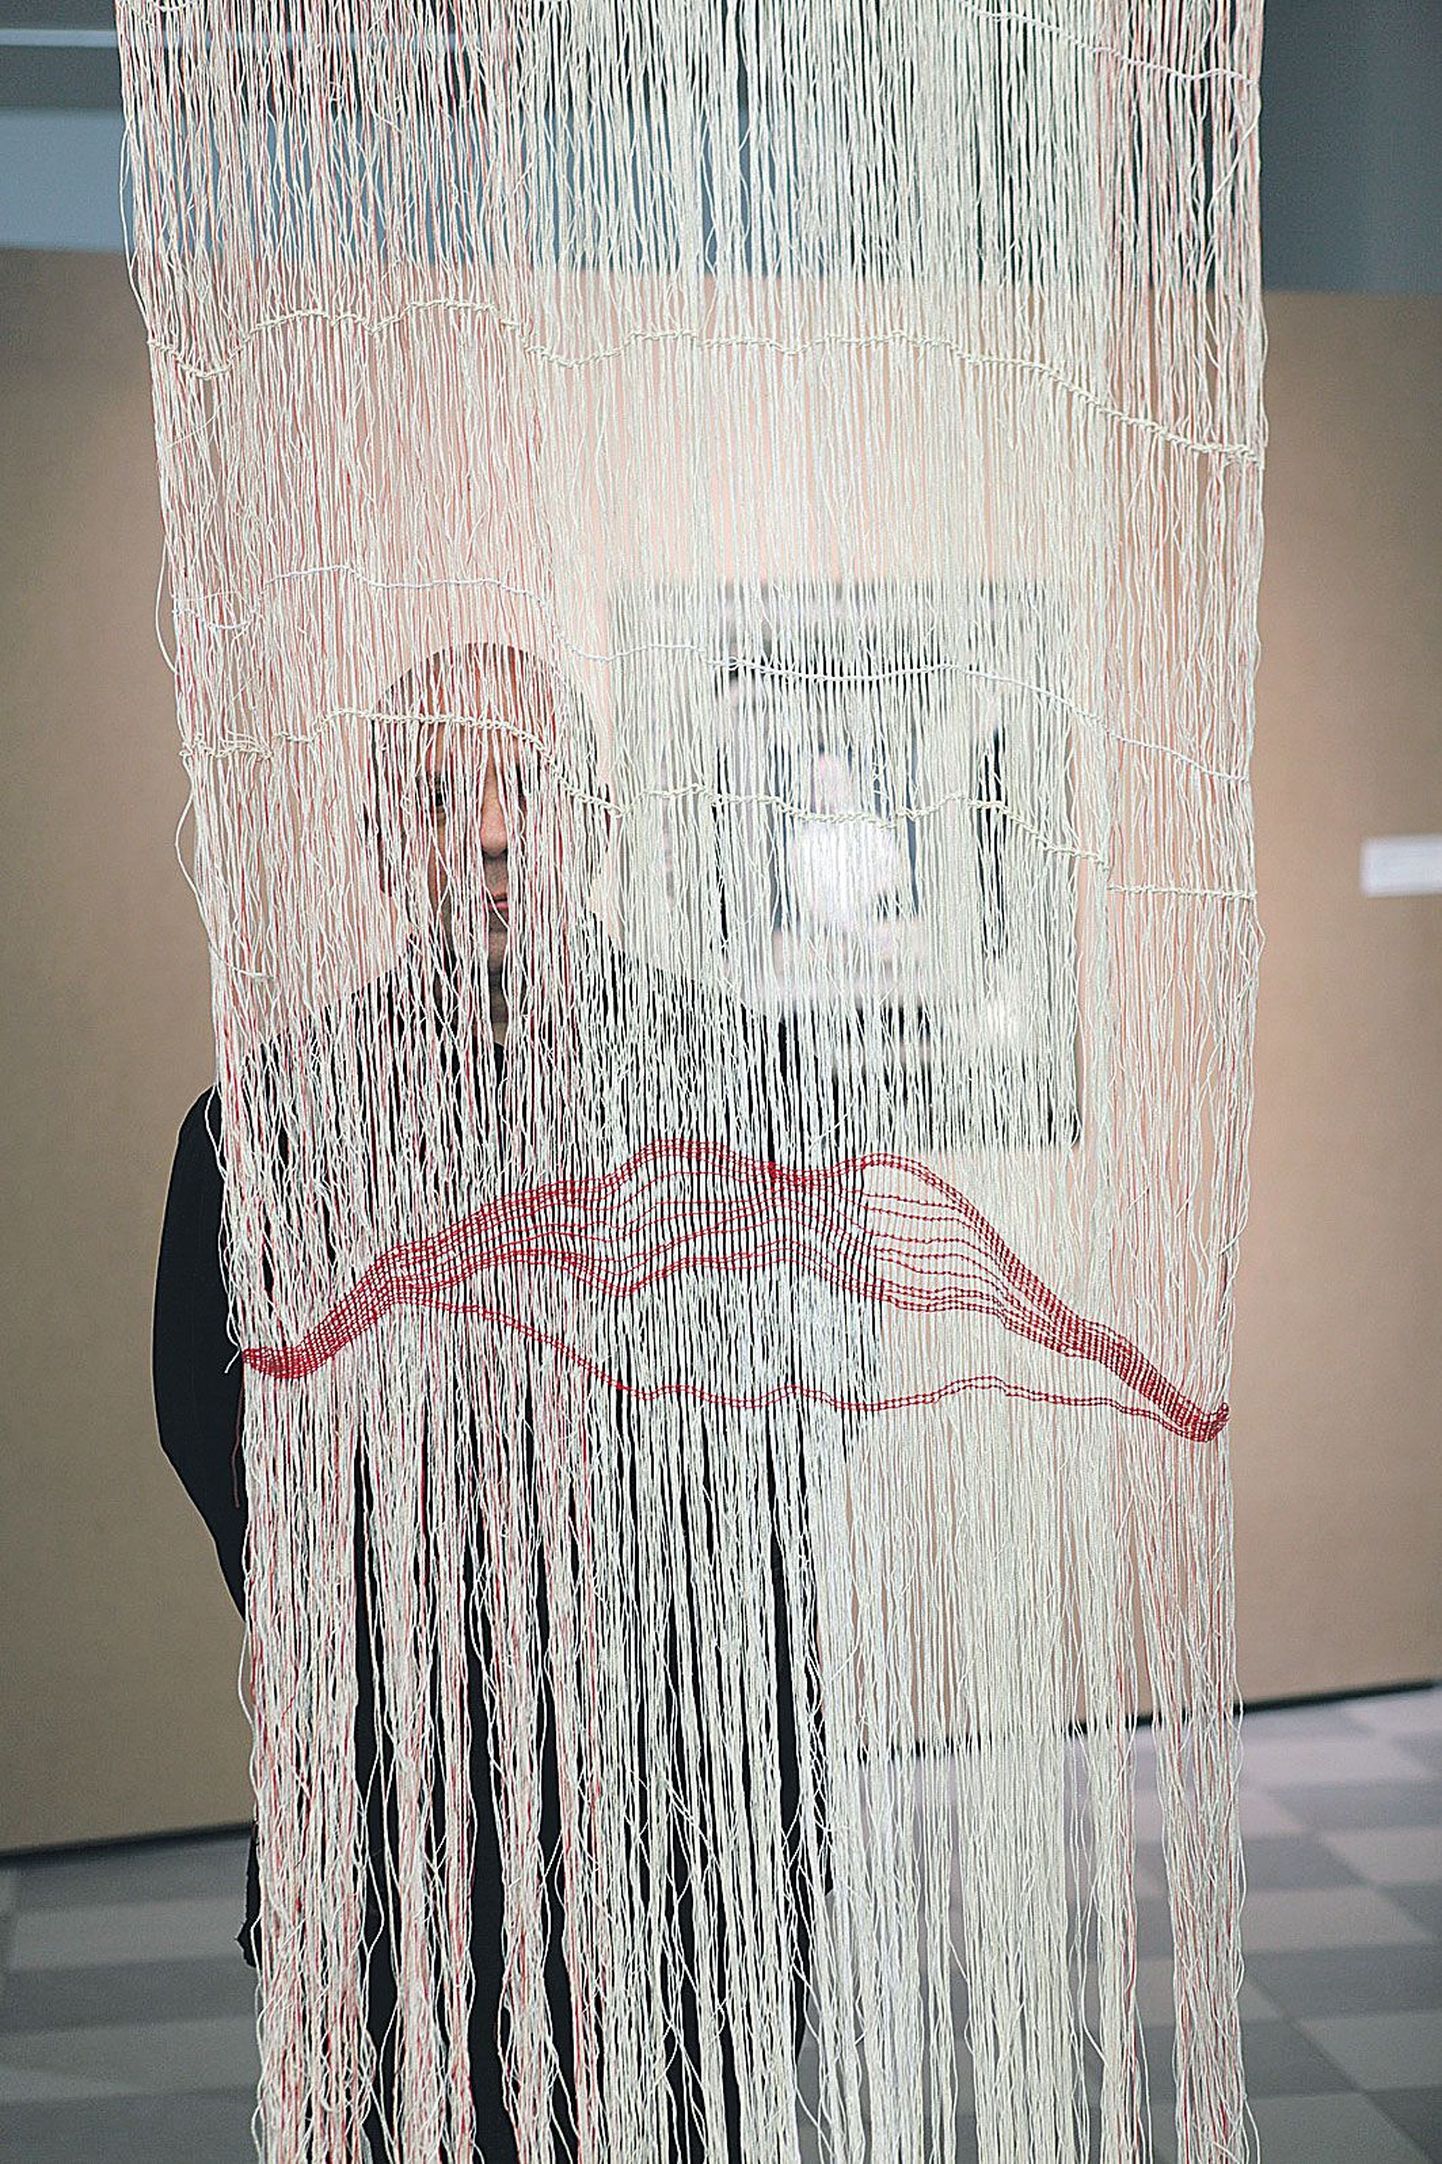 Fotokunstnik Peeter Laurits räägib nii oma kui ka tekstiilikunstnik Aet Olli­saare teose kaudu. TKK õppejõudude näitust «Eneserefleksiivne II. Kunstnik» saab Nooruse galeriis (Riia 11) vaadata 26. veebruarini.